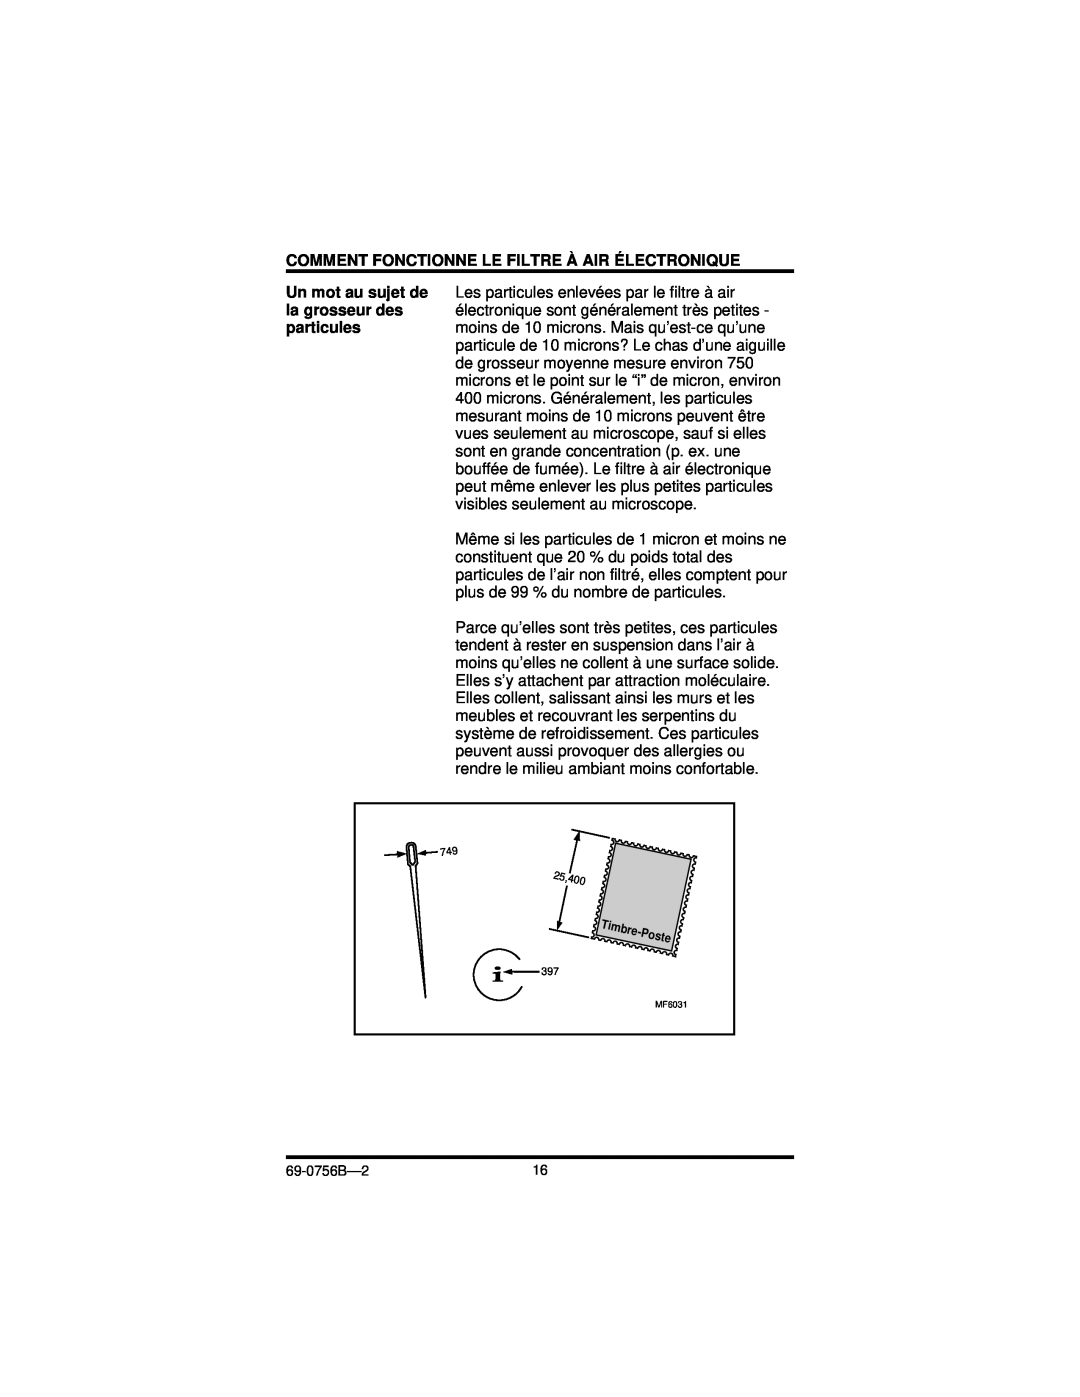 Honeywell F50F manual Comment Fonctionne Le Filtre À Air Électronique, Un mot au sujet de la grosseur des particules 